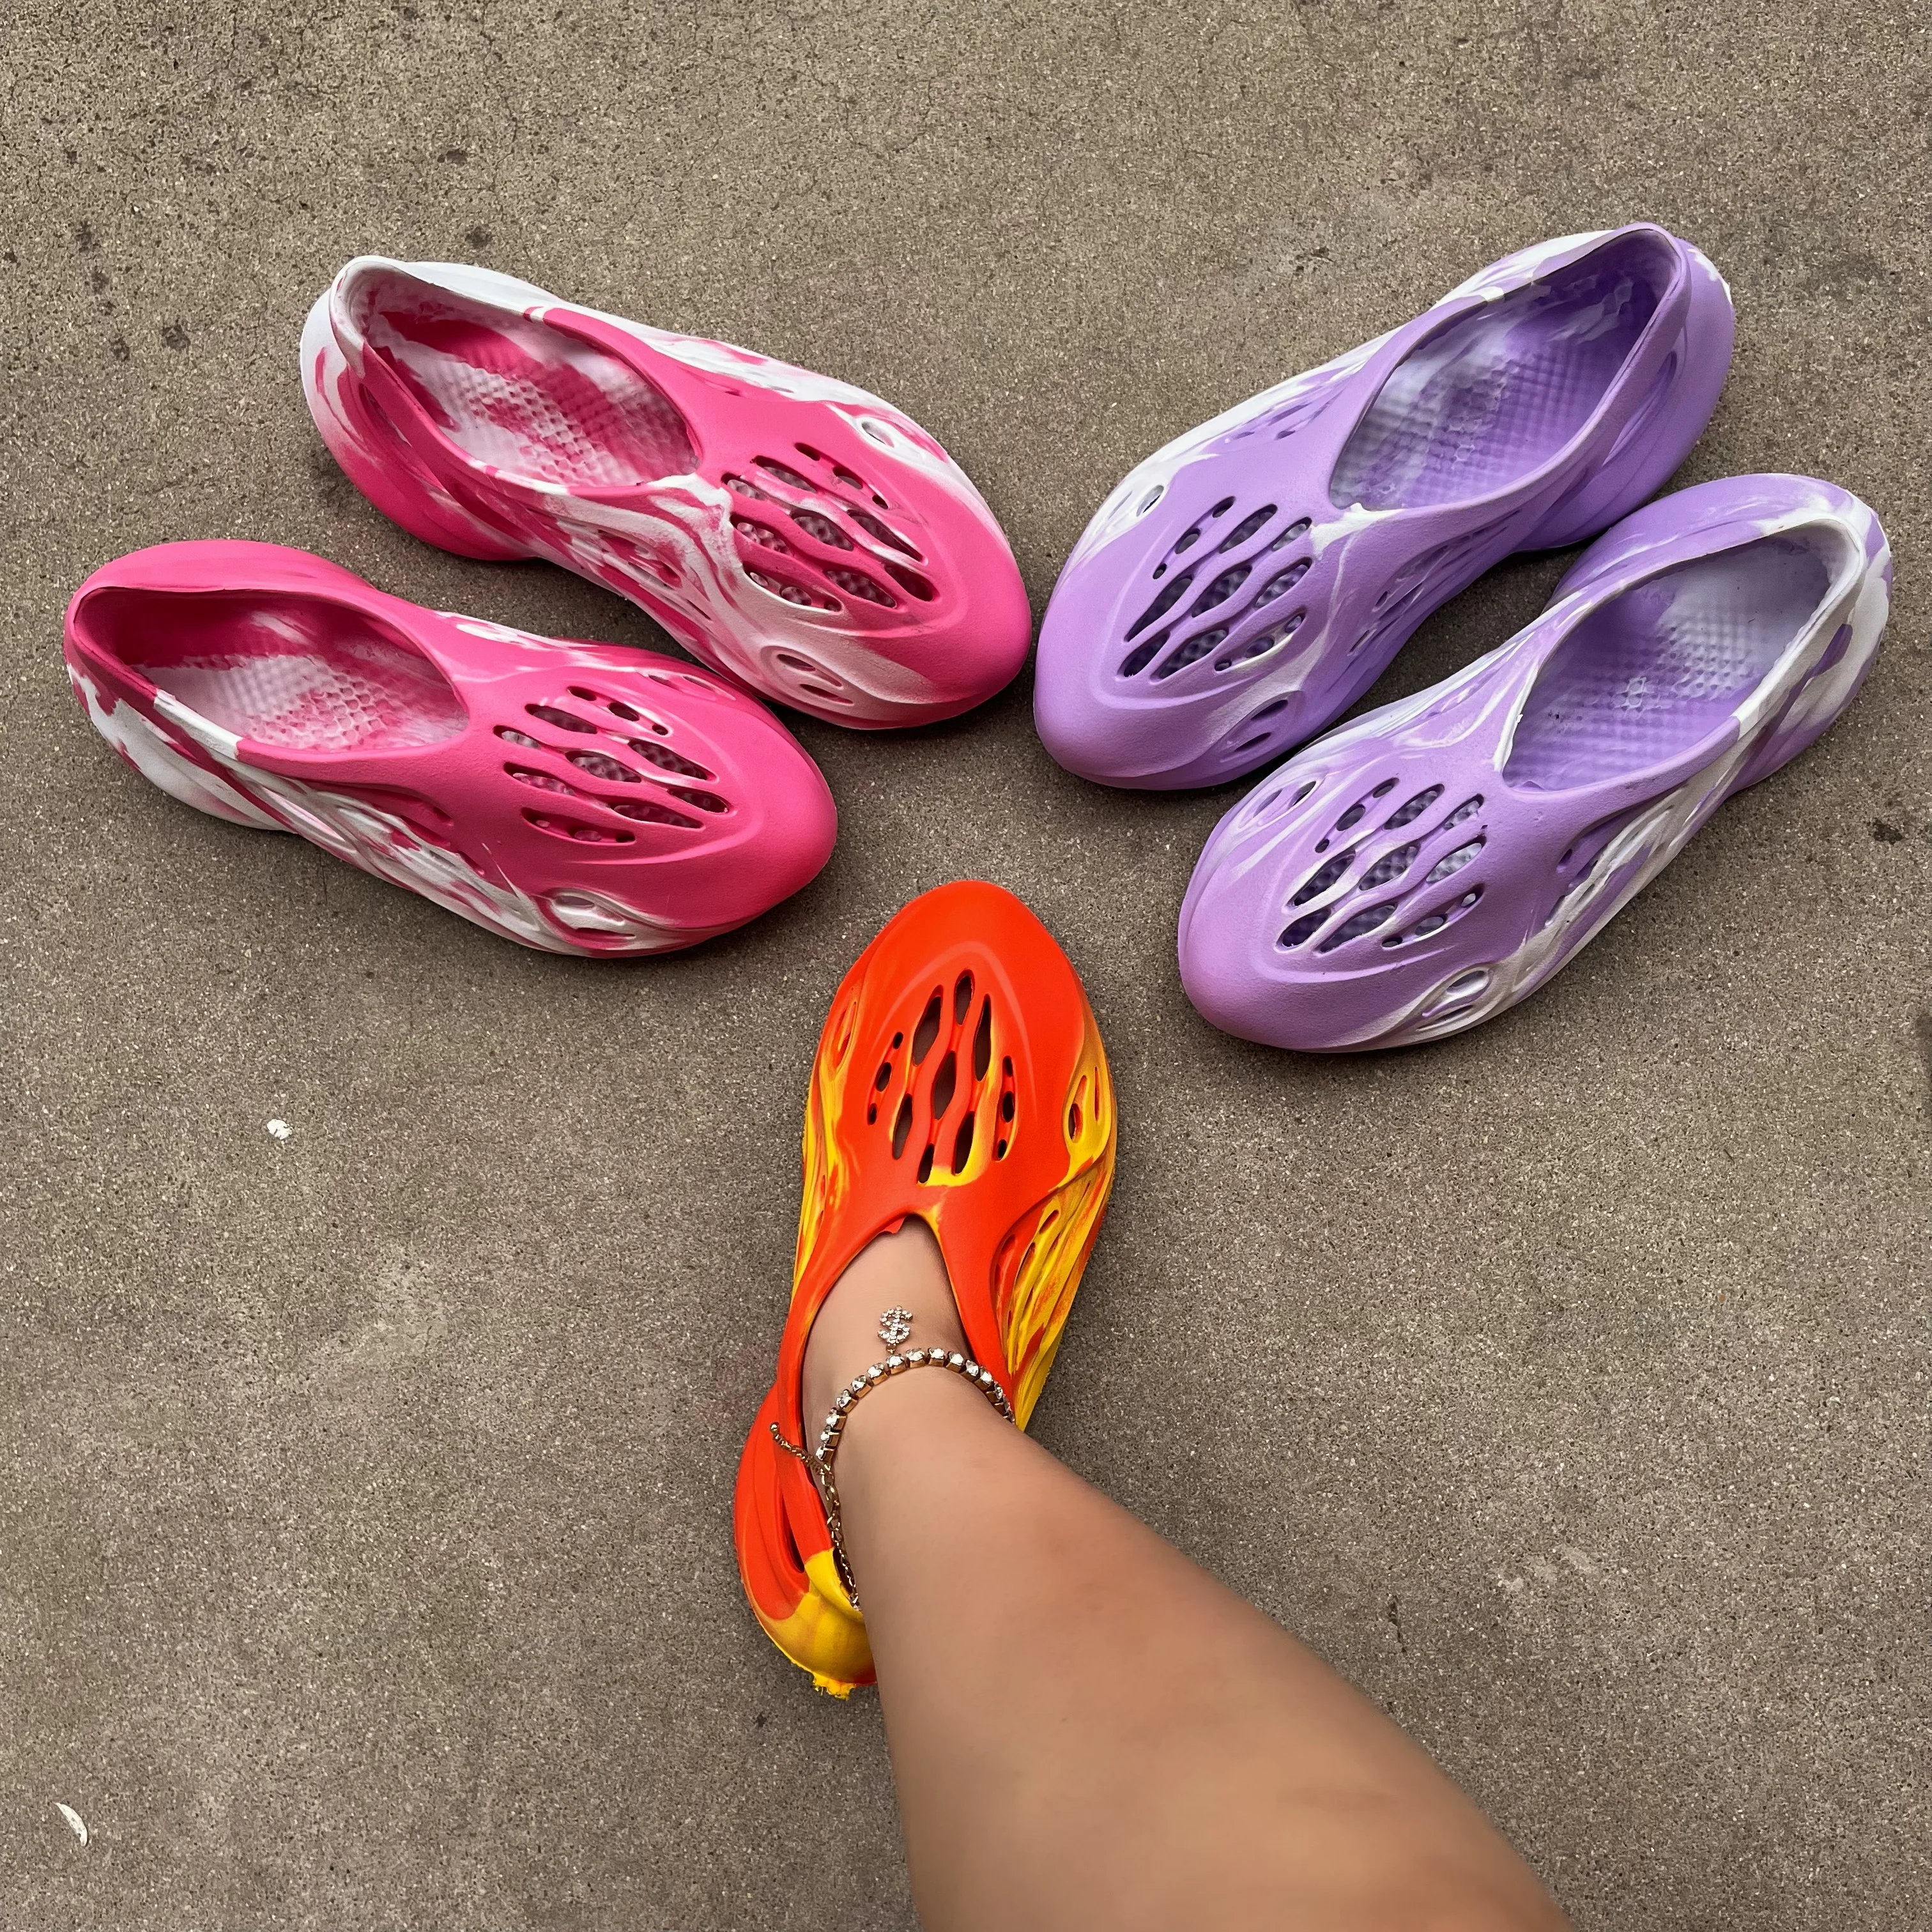 

2022 New Arrival EVA Yezzy Foam Runner Slides Shoe Man Women Yeezys Foam Runners Purple Pink Sandals for Men, Pink, purple, orange